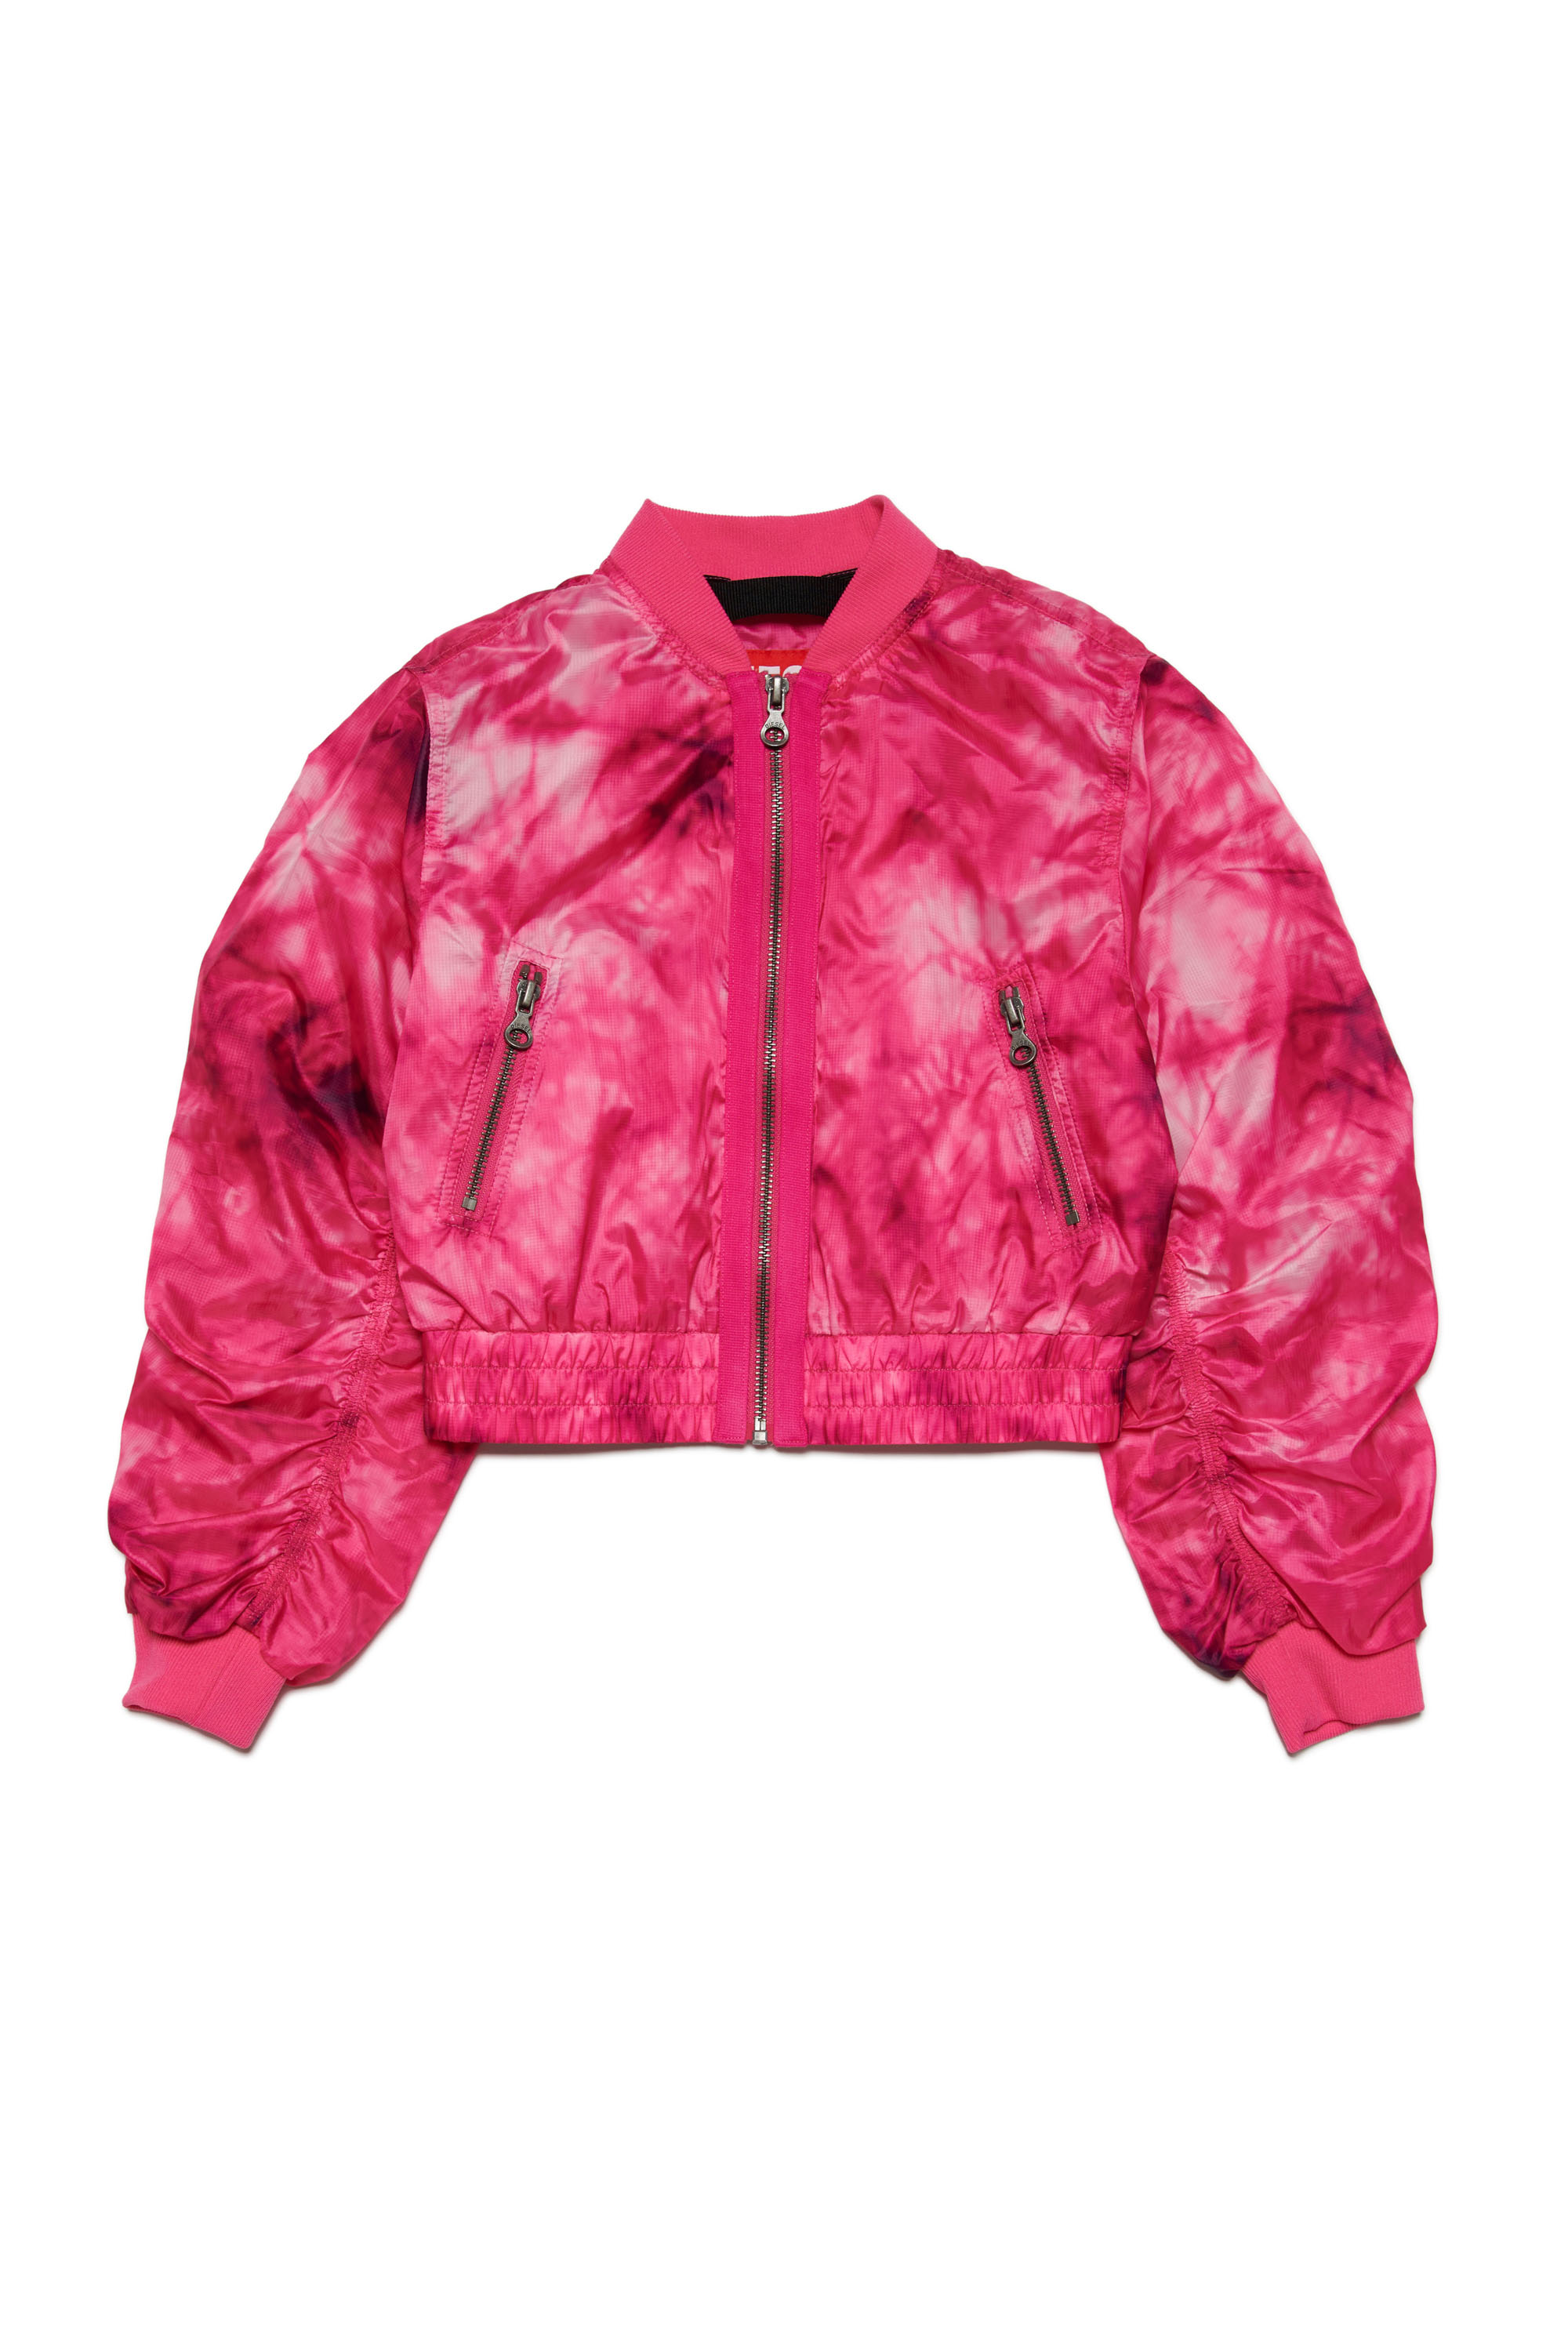 Diesel - JOAK, Woman Bomber jacket in tie-dye ripstop in Pink - Image 1